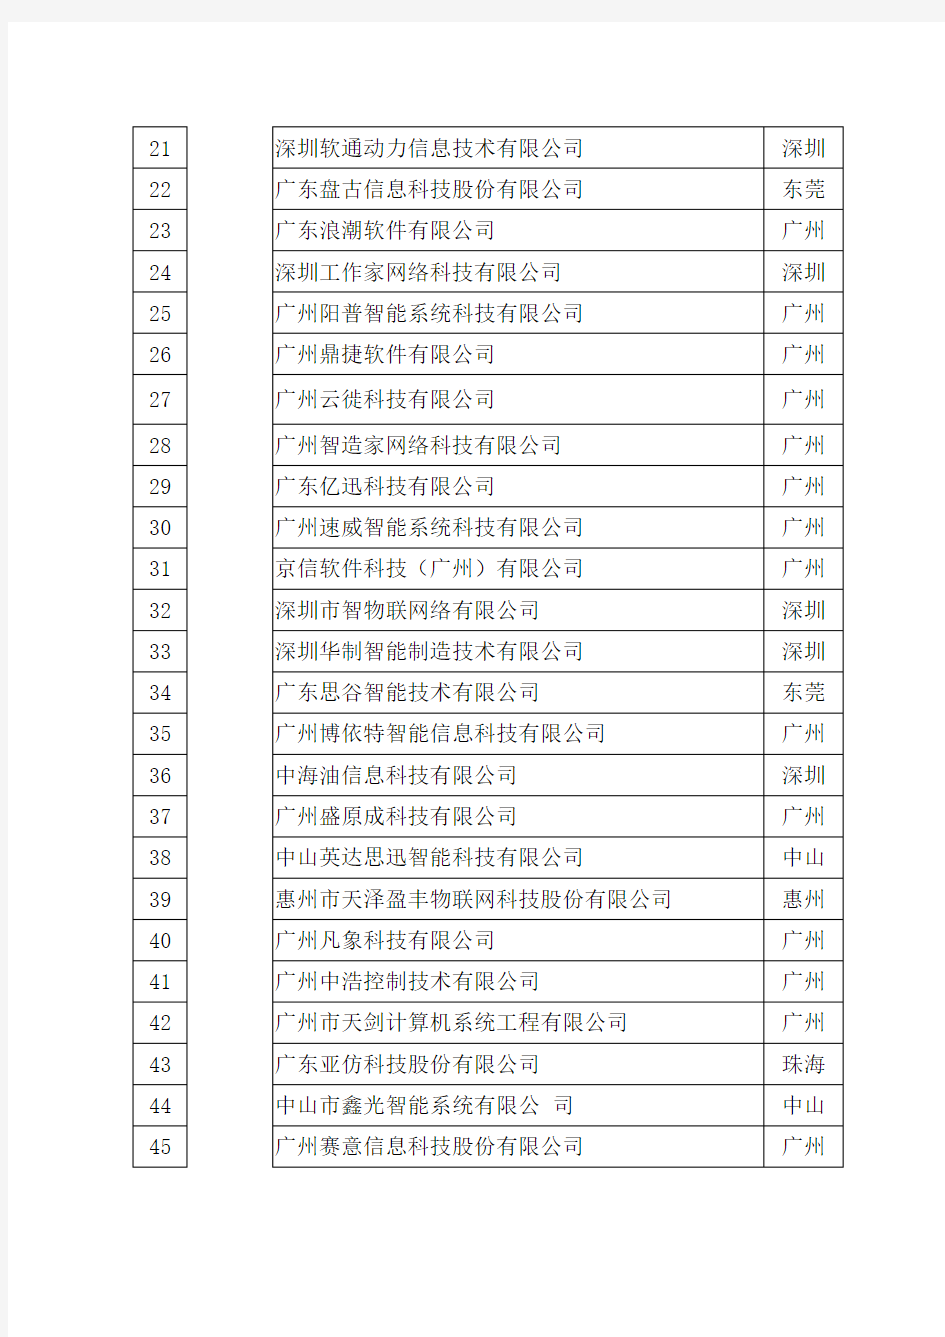 广东省工业互联网产业生态供给资源池名单第一批